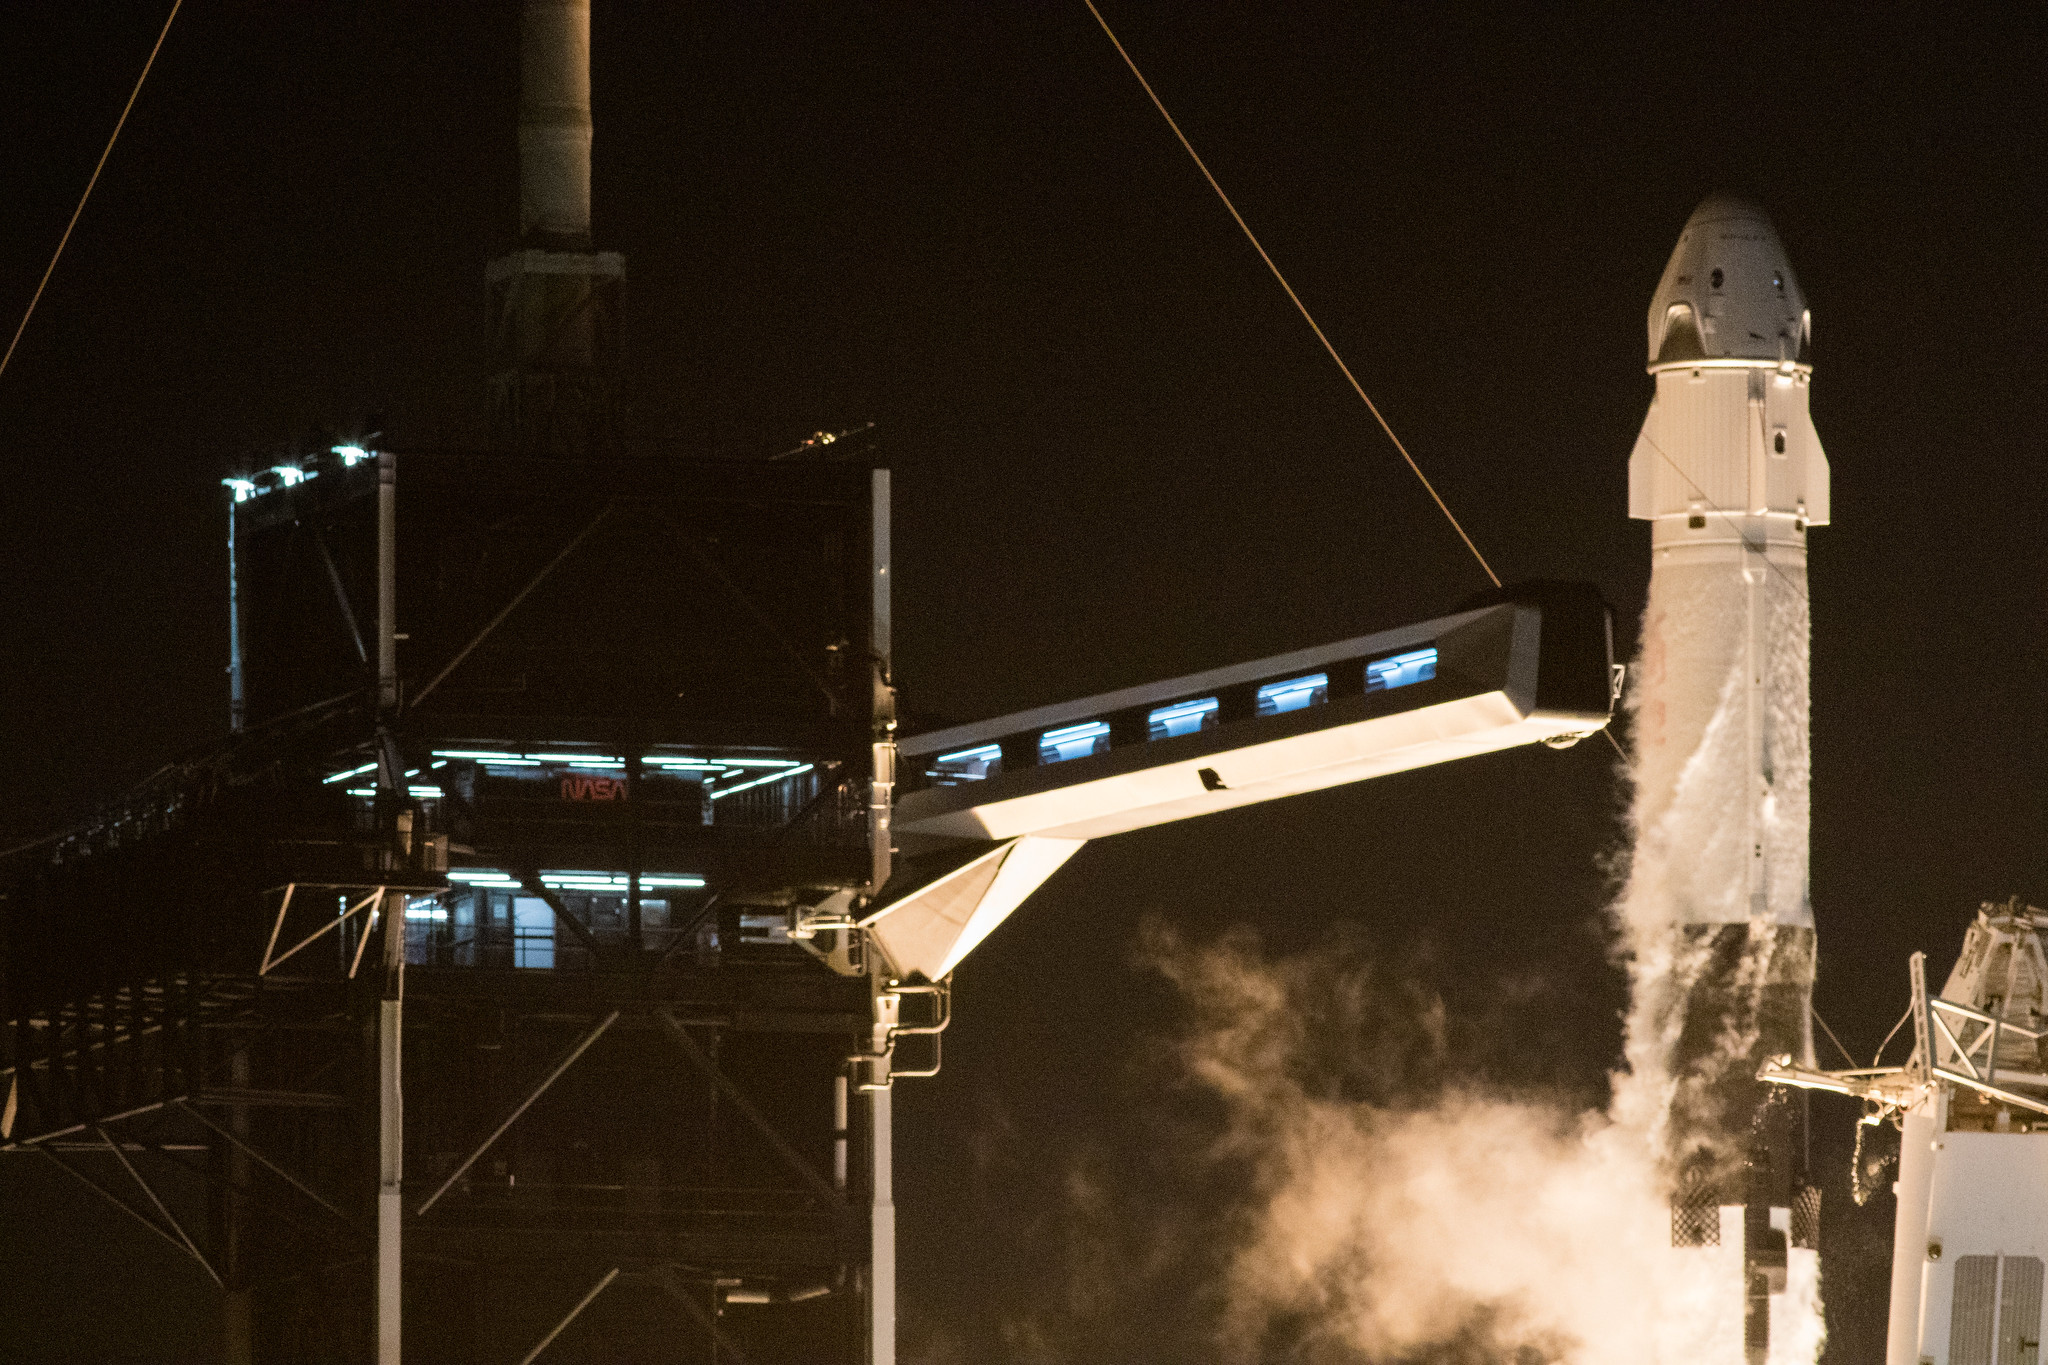 Друга пілотована місія Crew Dragon від SpaceX. Як це виглядало